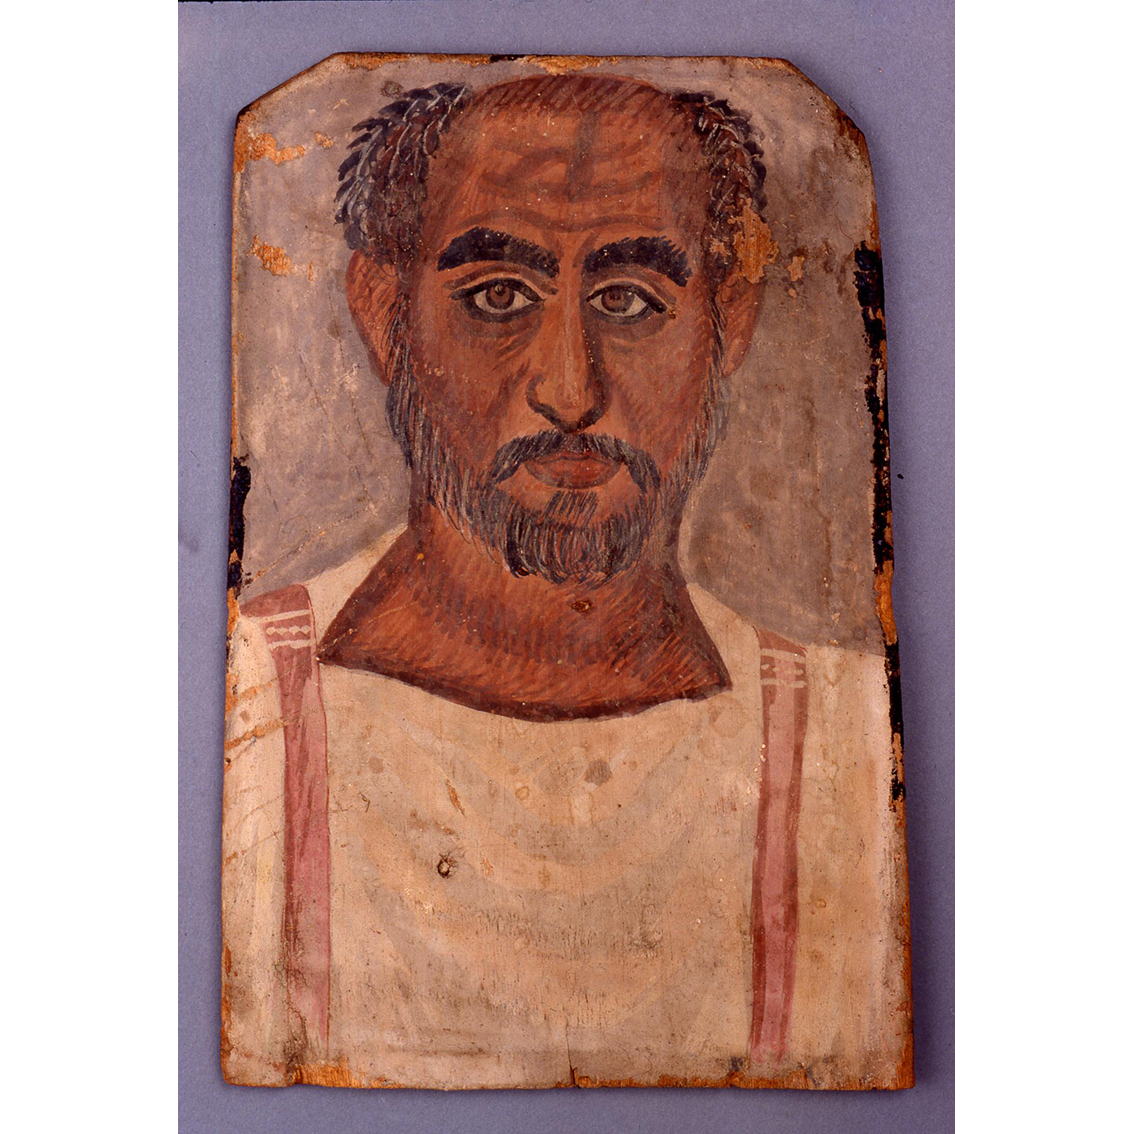 Portrait d’un homme d’âge mûr,<br>vers 250-300, bois peint à l’encaustique,<br>H. 36 cm ; l. 24 cm, er-Rubayat<br>4946, Freud Museum, Londres, freud.org.uk